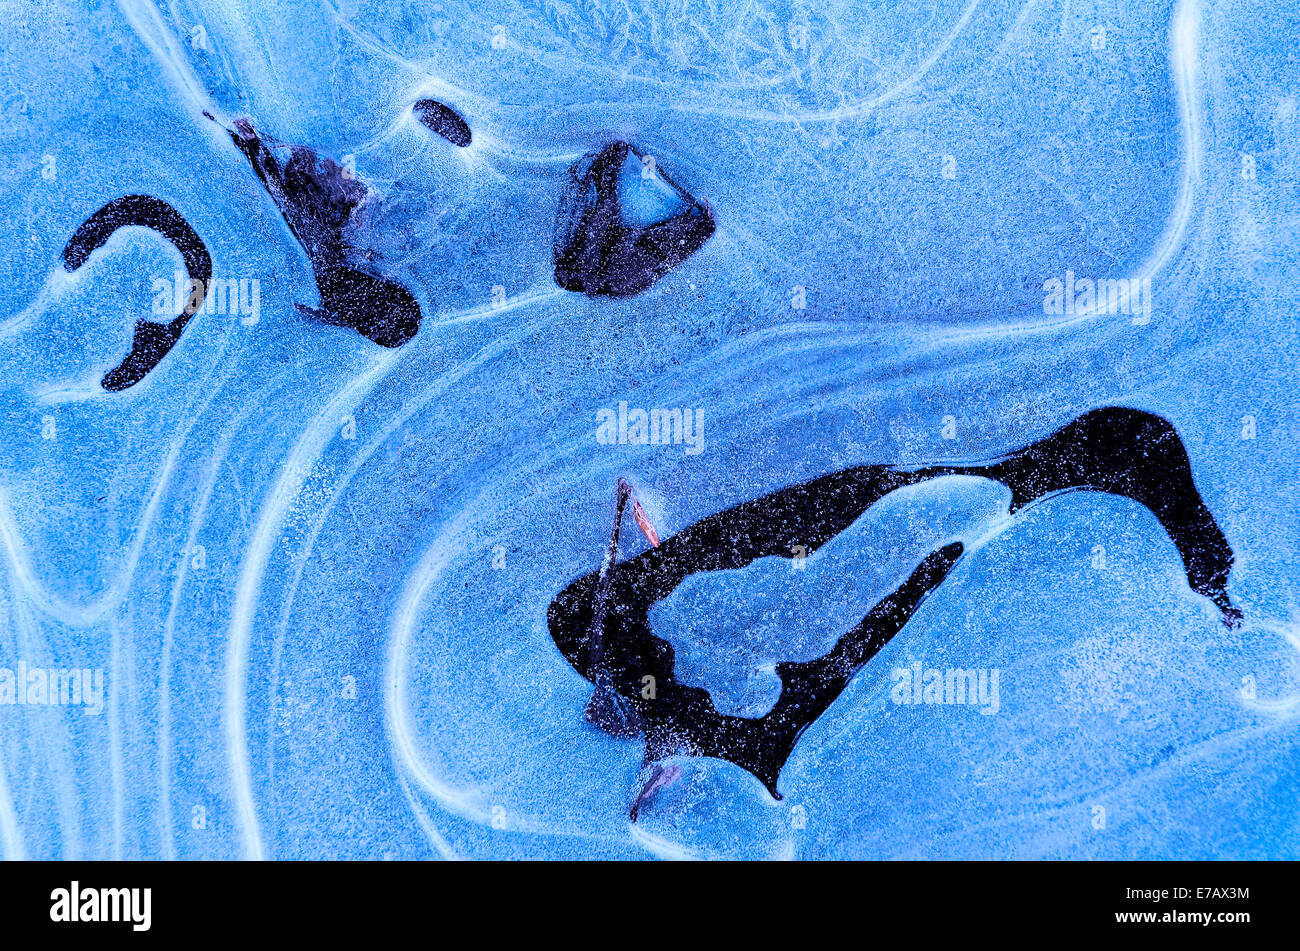 Arroyo congelado resultando en patrones de cristal de hielo azul translúcido Foto de stock